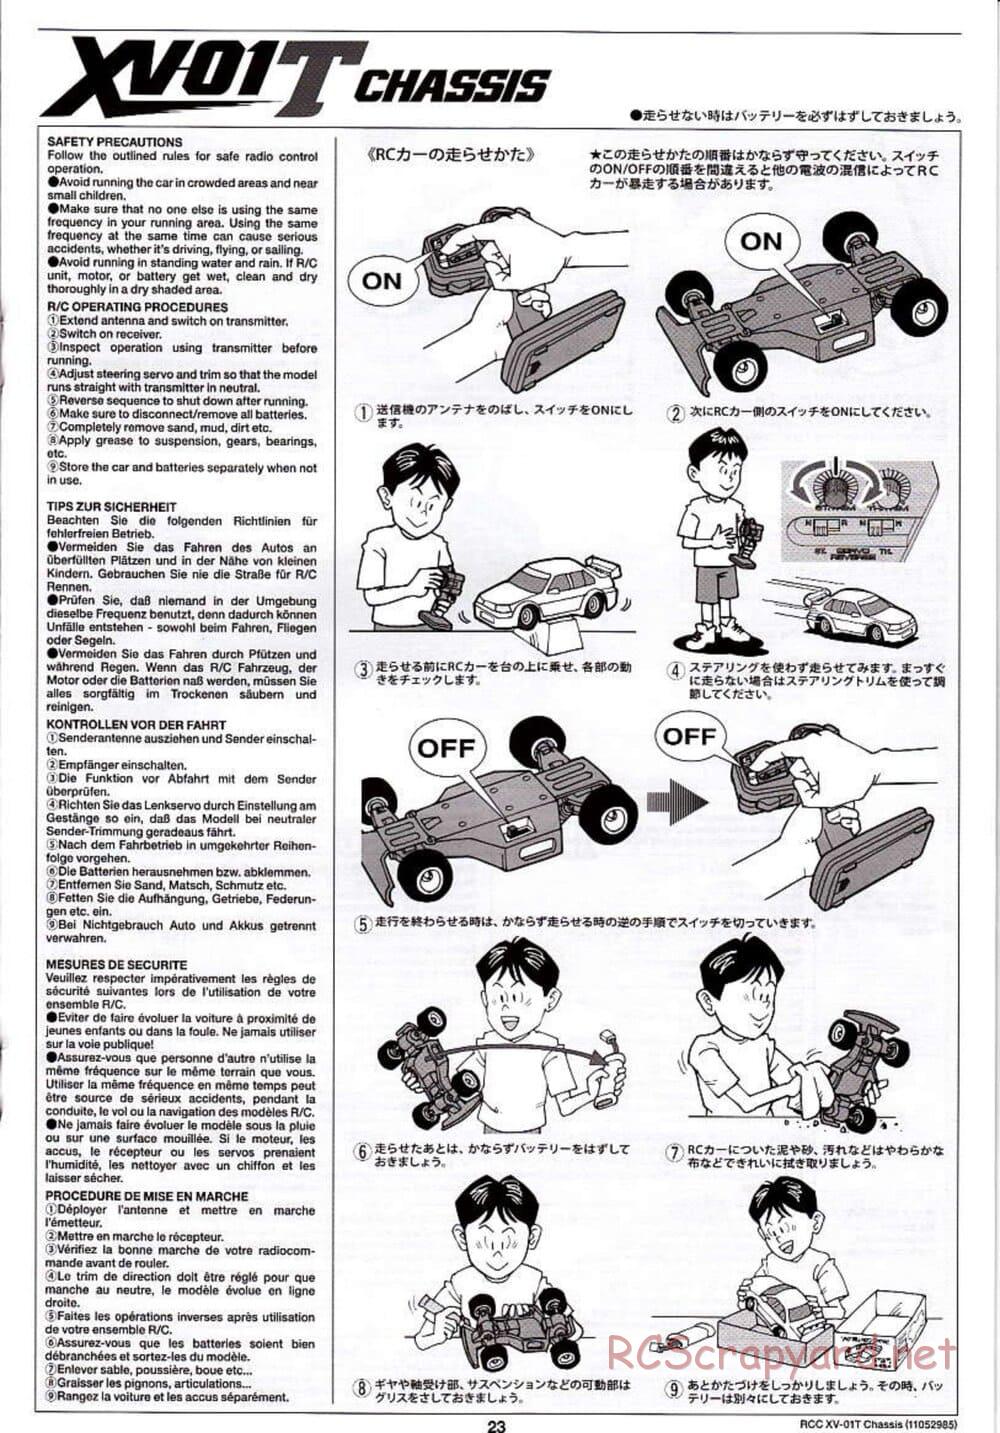 Tamiya - XV-01T Chassis - Manual - Page 23